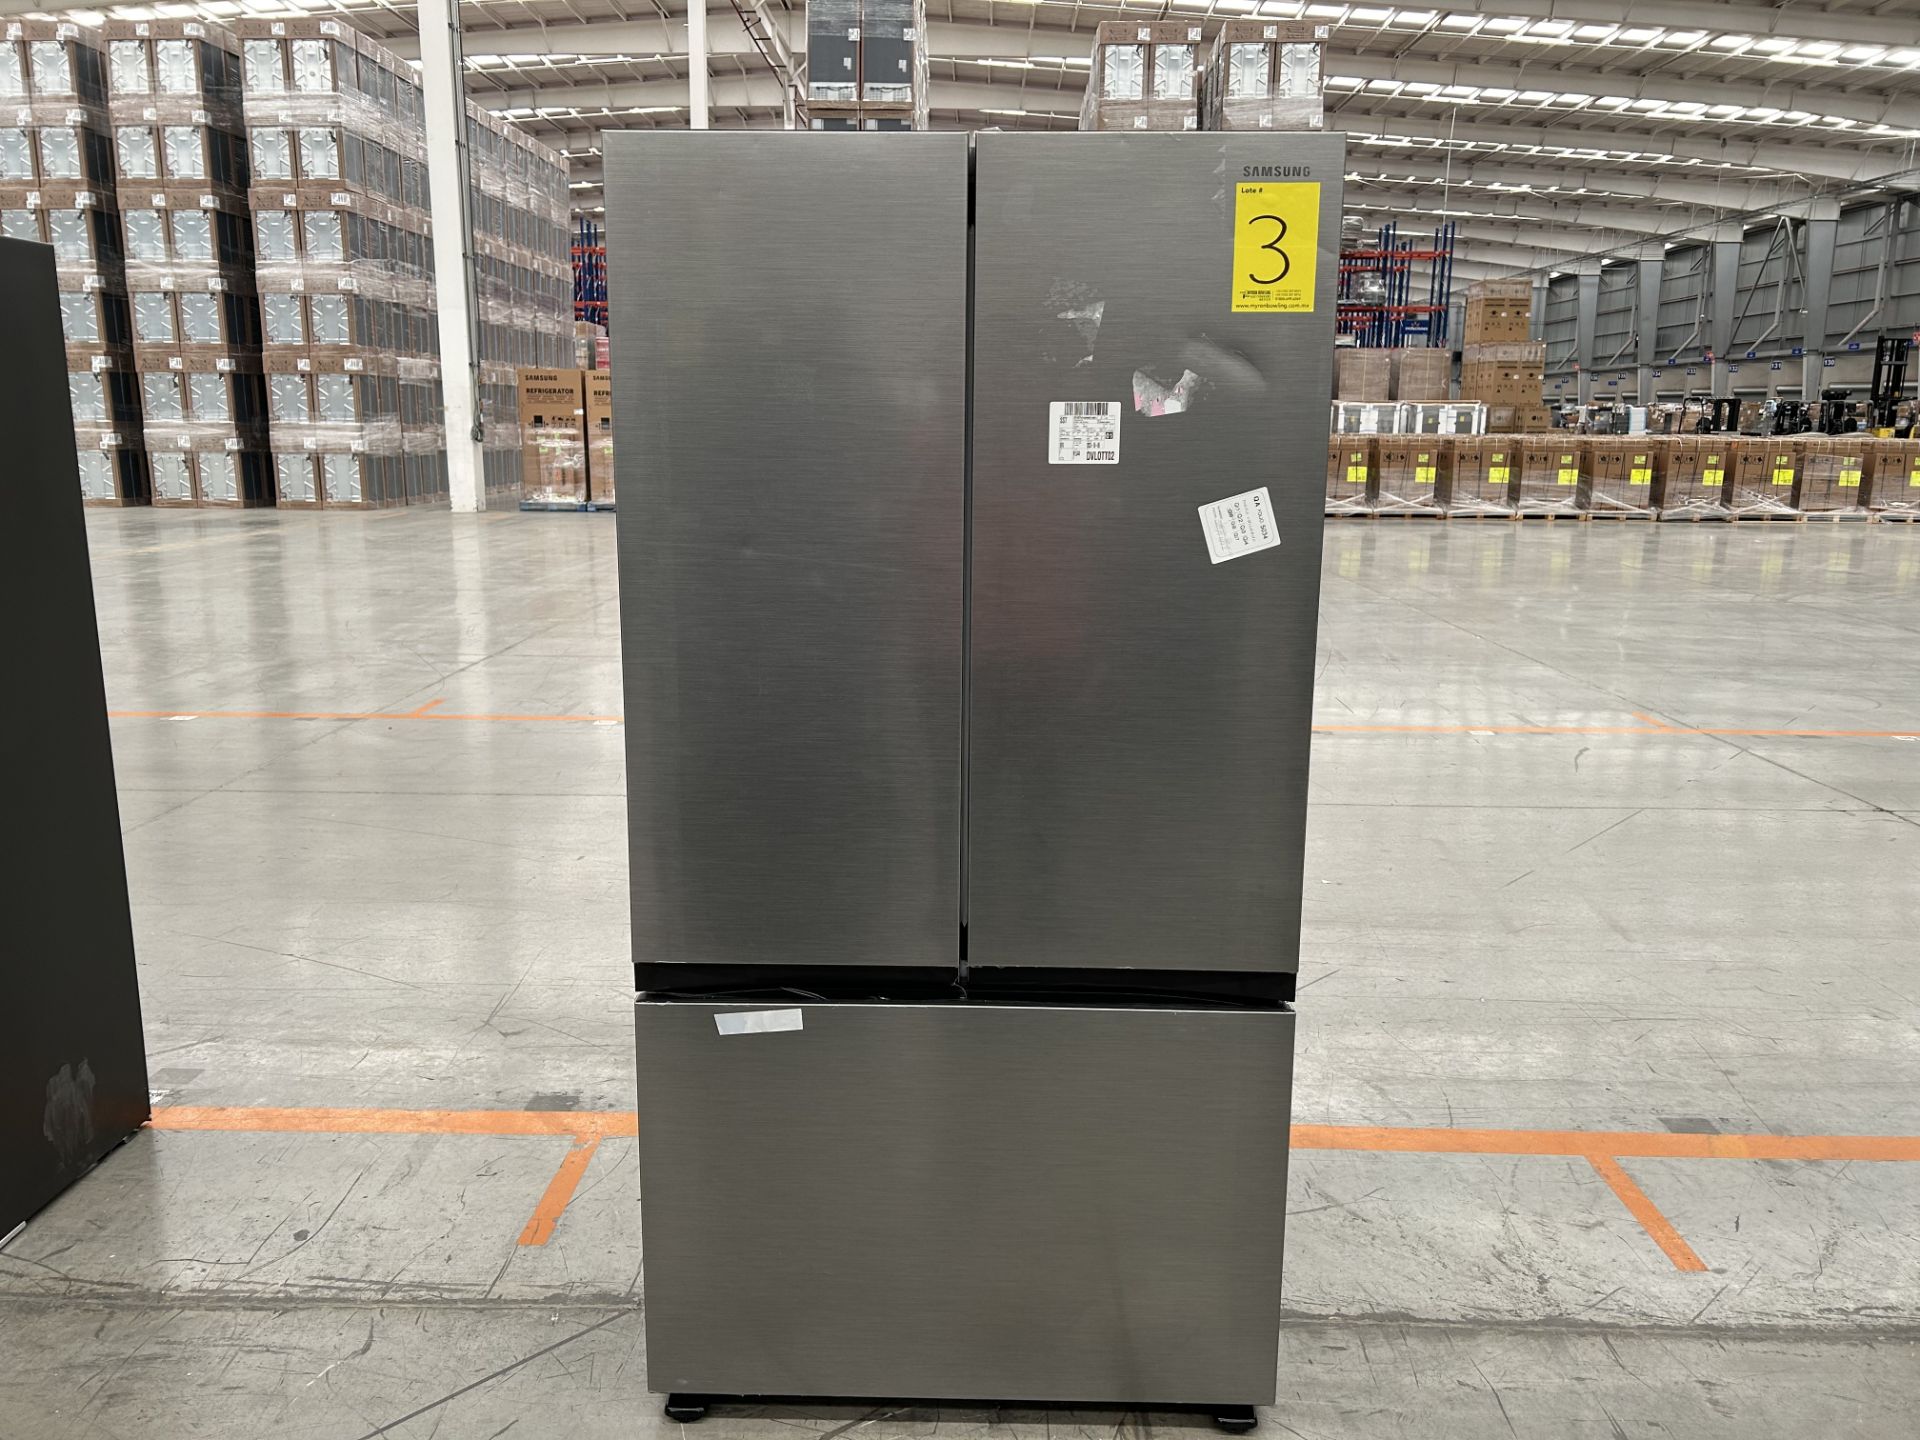 Lote de 1 Refrigerador Marca SAMSUNG, Modelo RF32CG5A10S9EM, Serie 900196X, Color GRIS (No se asegu